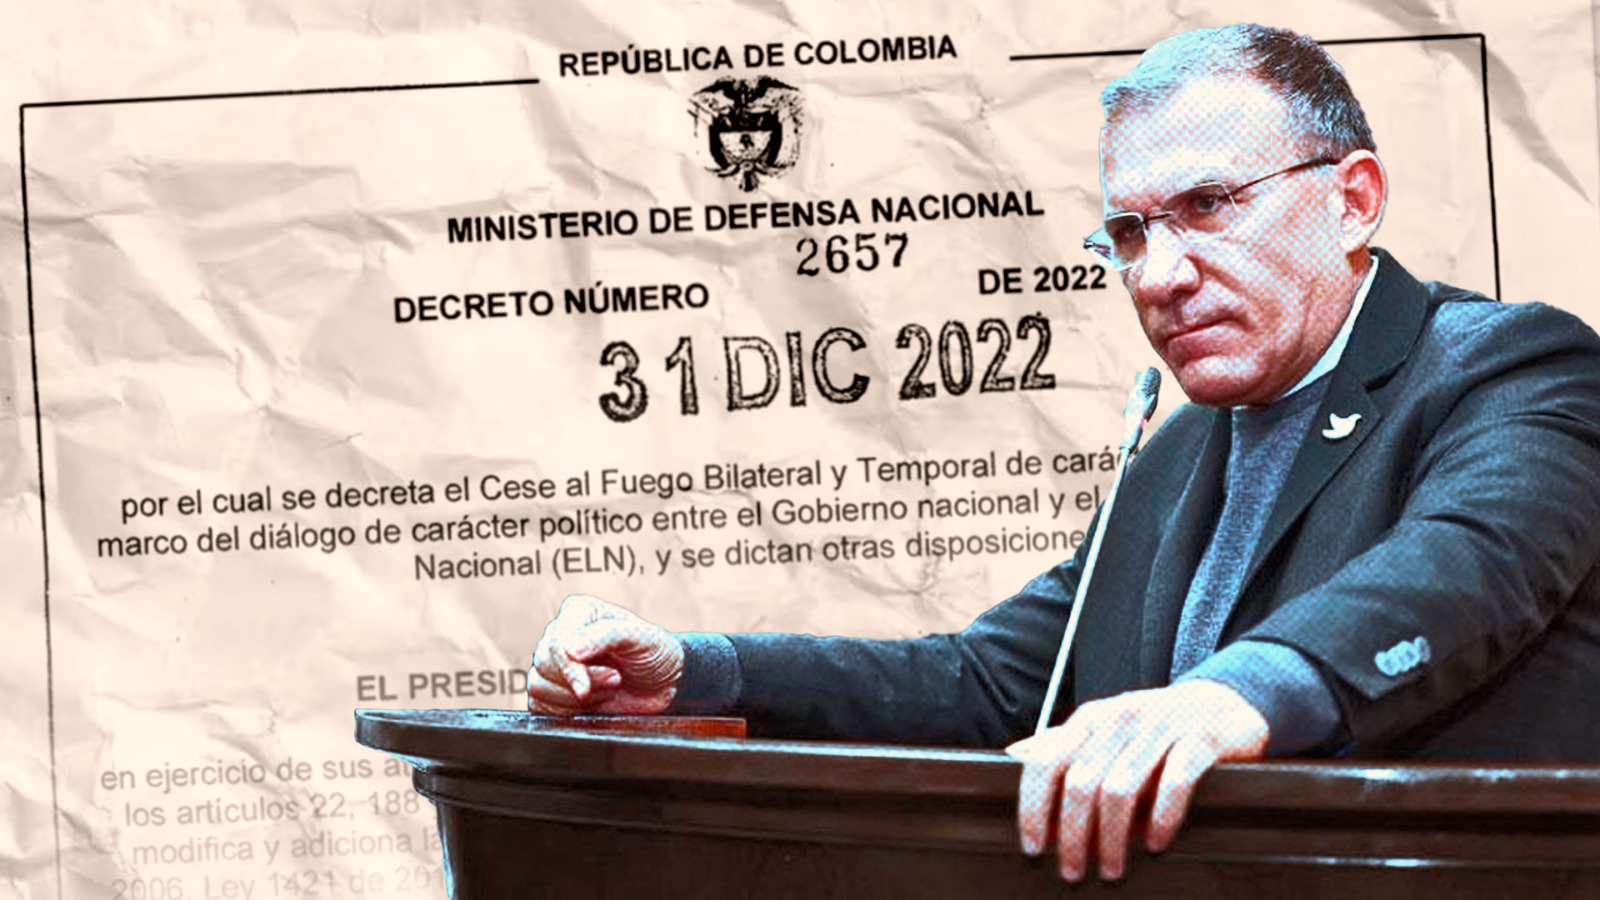 Roy Barreras criticó el cese al fuego del Gobierno con grupos delincuenciales: “Los decretos del 31 de diciembre son inútiles, no se necesitan, no fueron correspondidos”